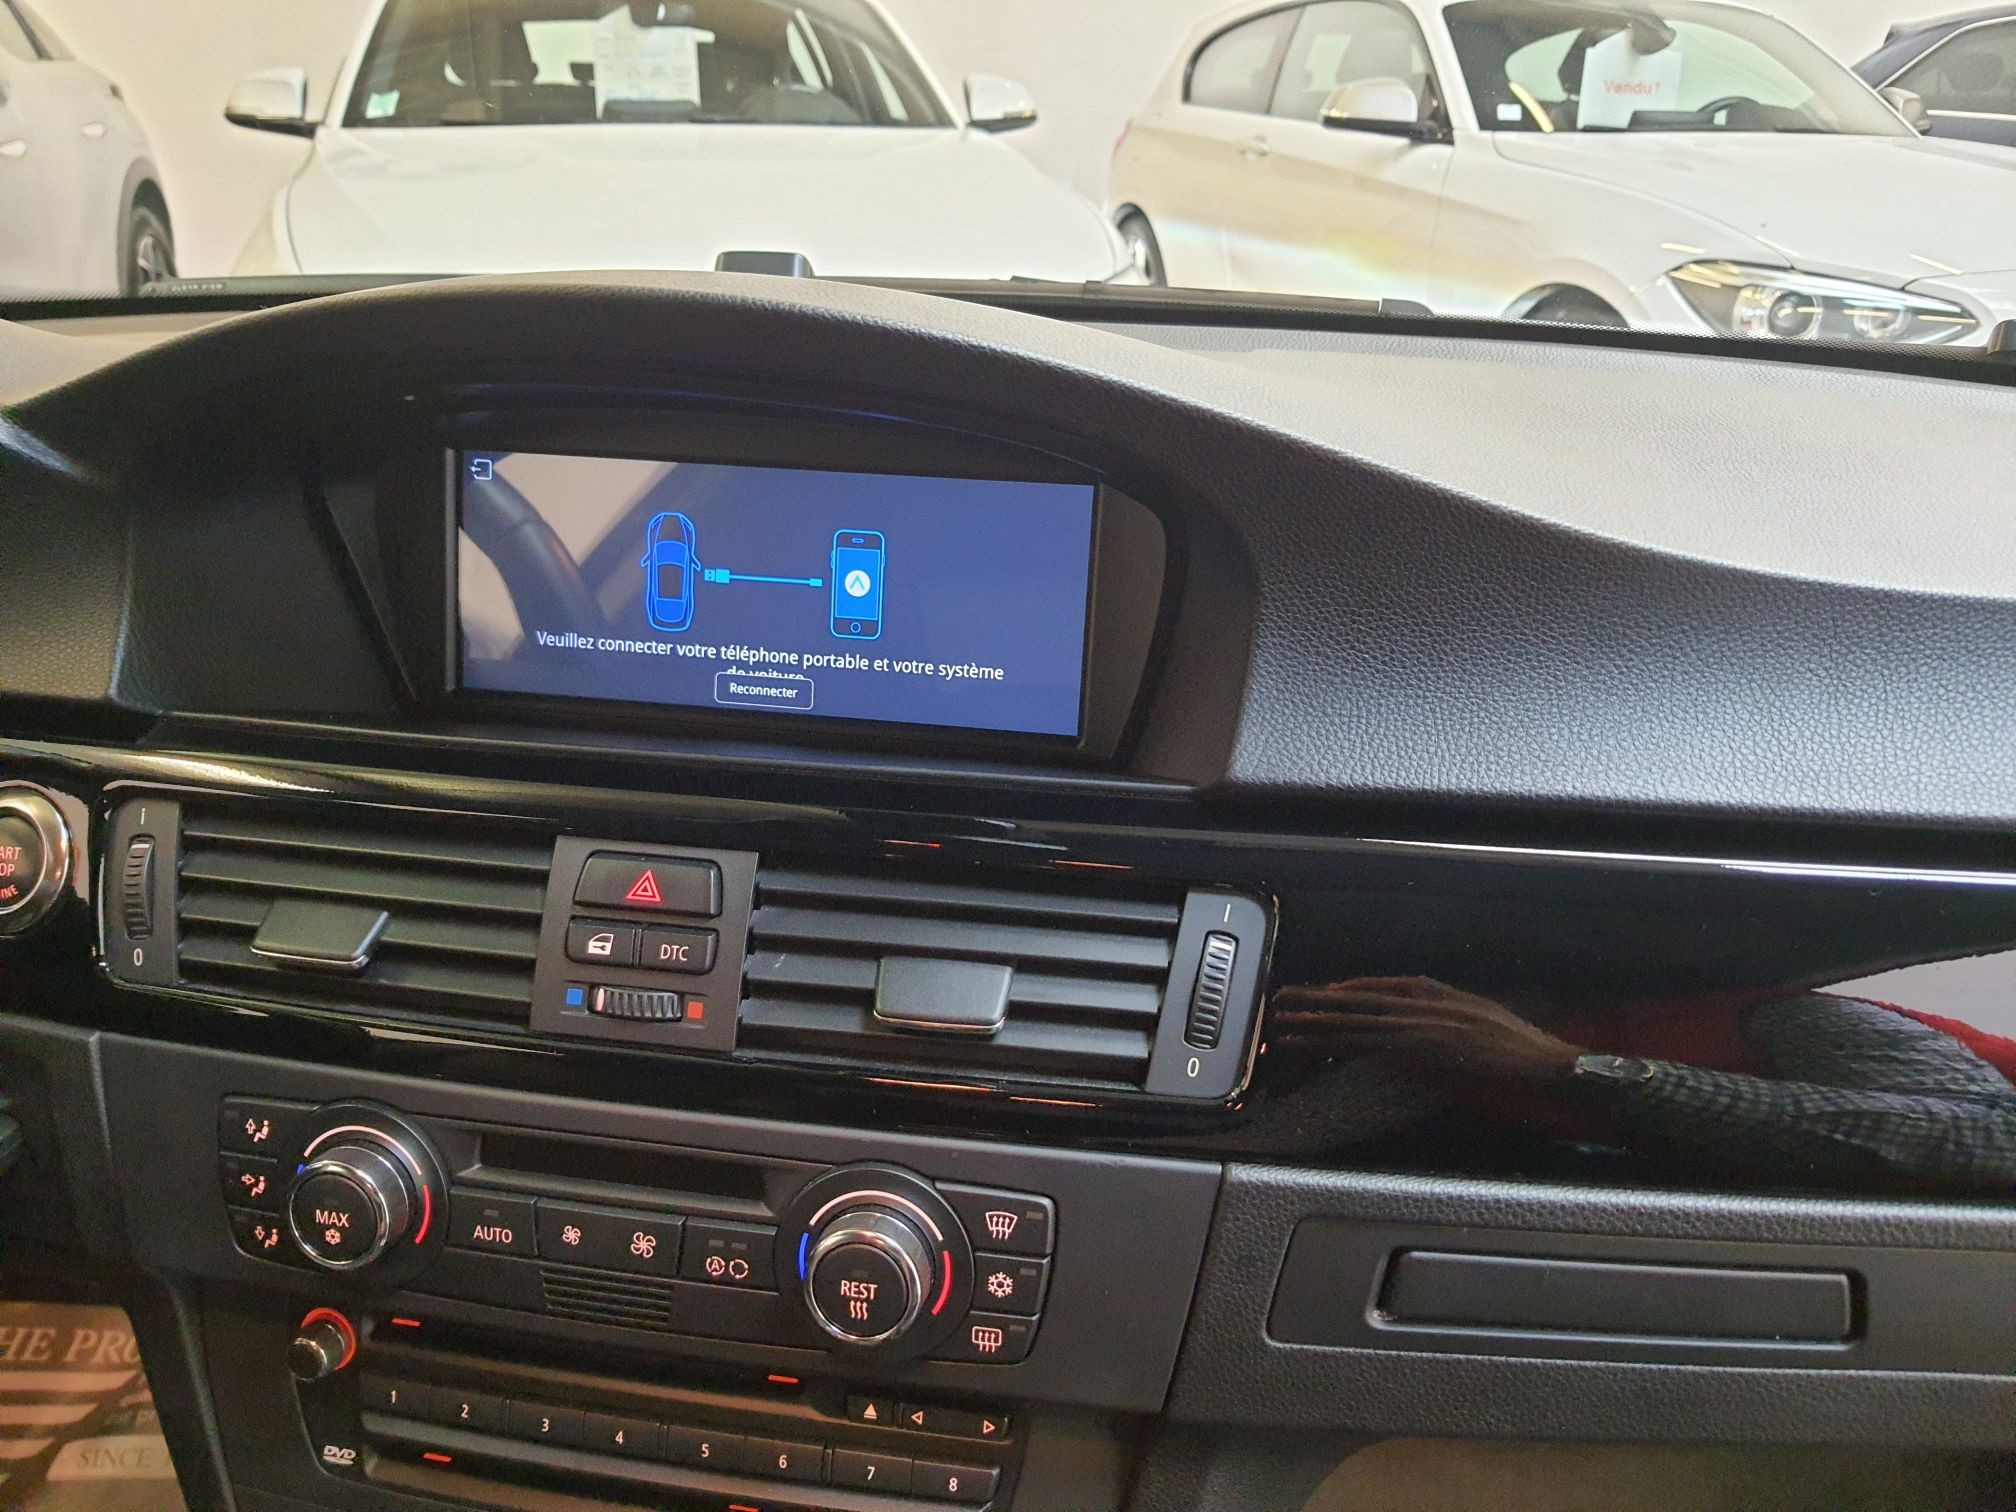 BMW 335i 306ch